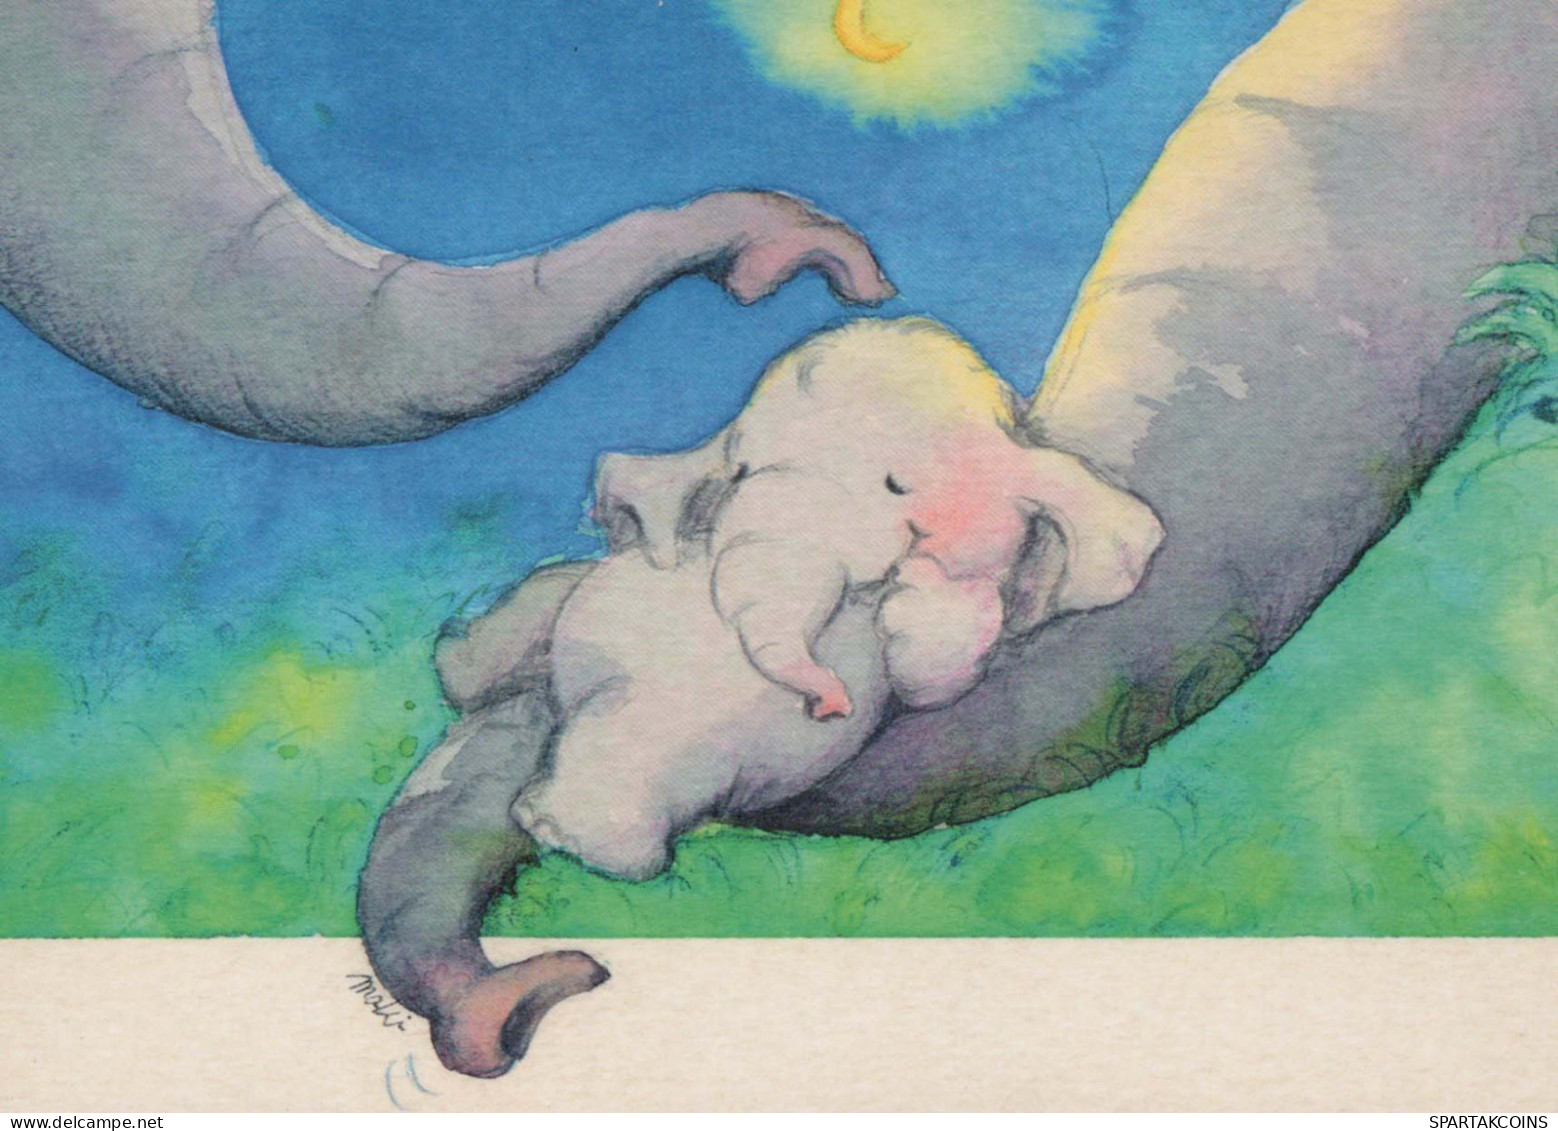 ELEFANTE Animale Vintage Cartolina CPSM #PBS752.A - Éléphants